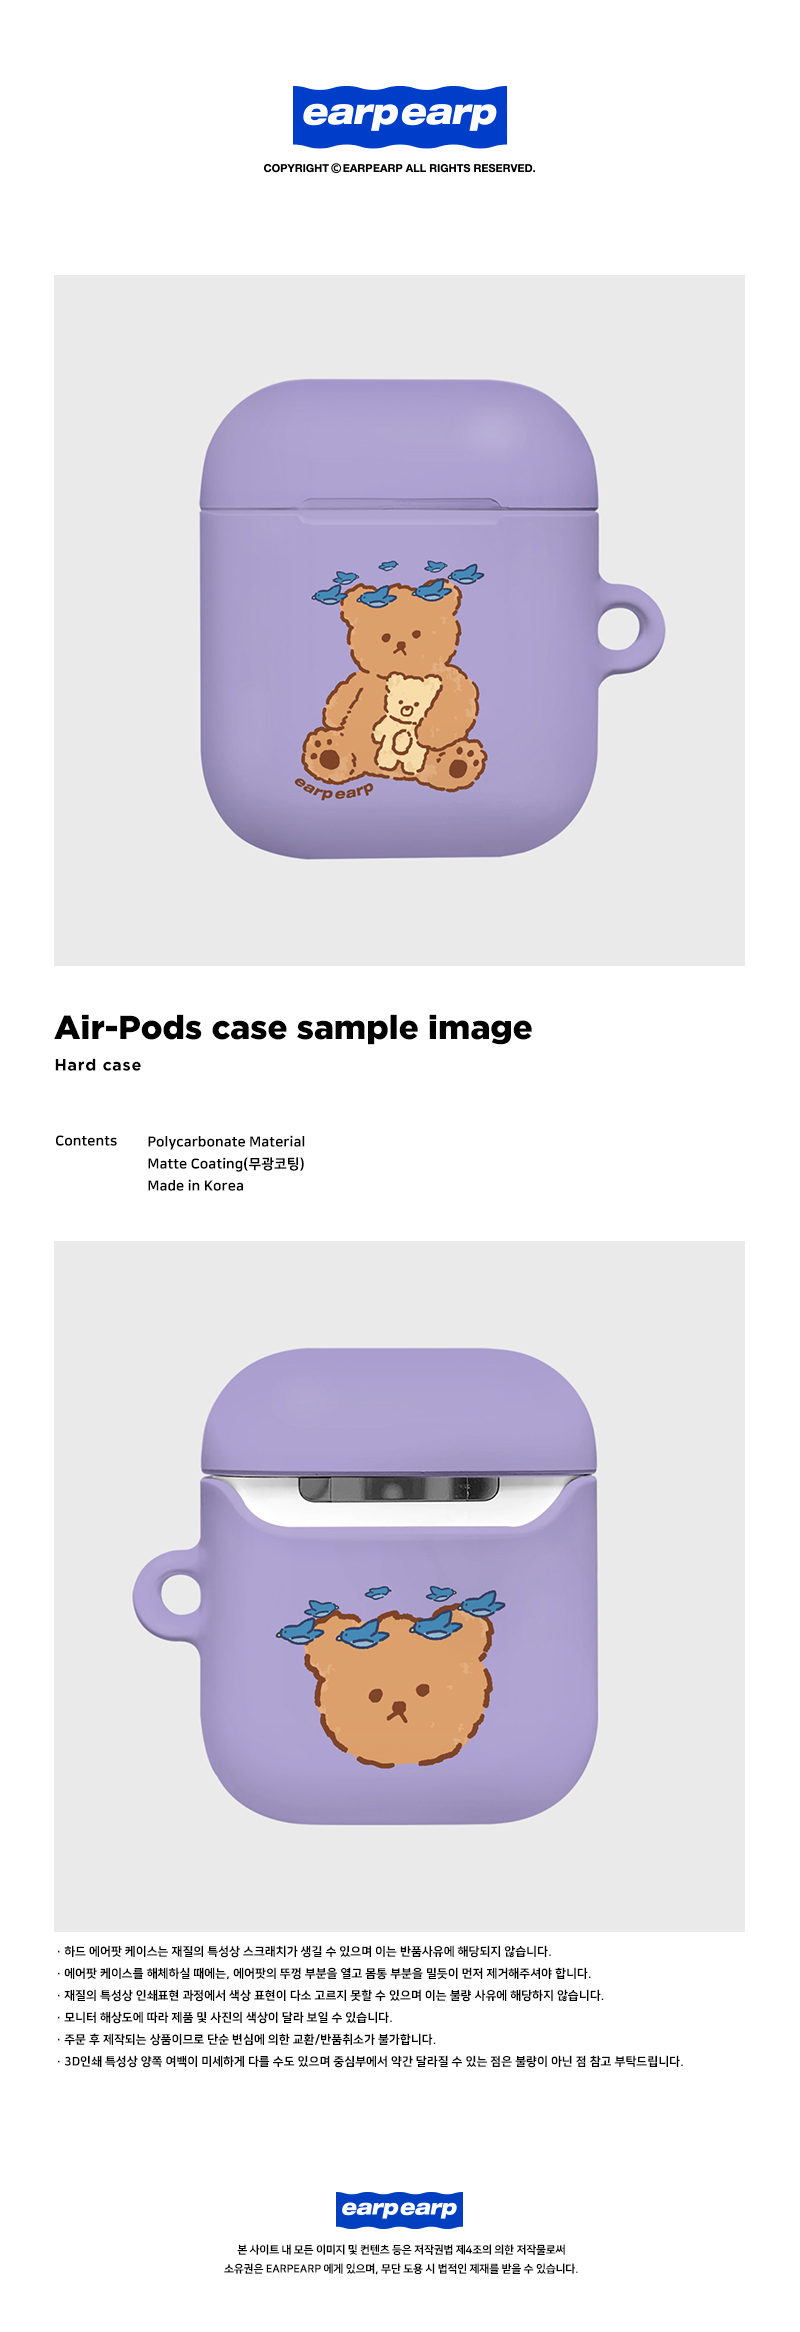 [호환용] blue bird bear-purple(Hard air pods)  11,900원 - 바이인터내셔널주식회사 디지털, 이어폰/헤드폰, 이어폰/헤드폰 액세서리, 에어팟/에어팟프로 케이스 바보사랑 [호환용] blue bird bear-purple(Hard air pods)  11,900원 - 바이인터내셔널주식회사 디지털, 이어폰/헤드폰, 이어폰/헤드폰 액세서리, 에어팟/에어팟프로 케이스 바보사랑